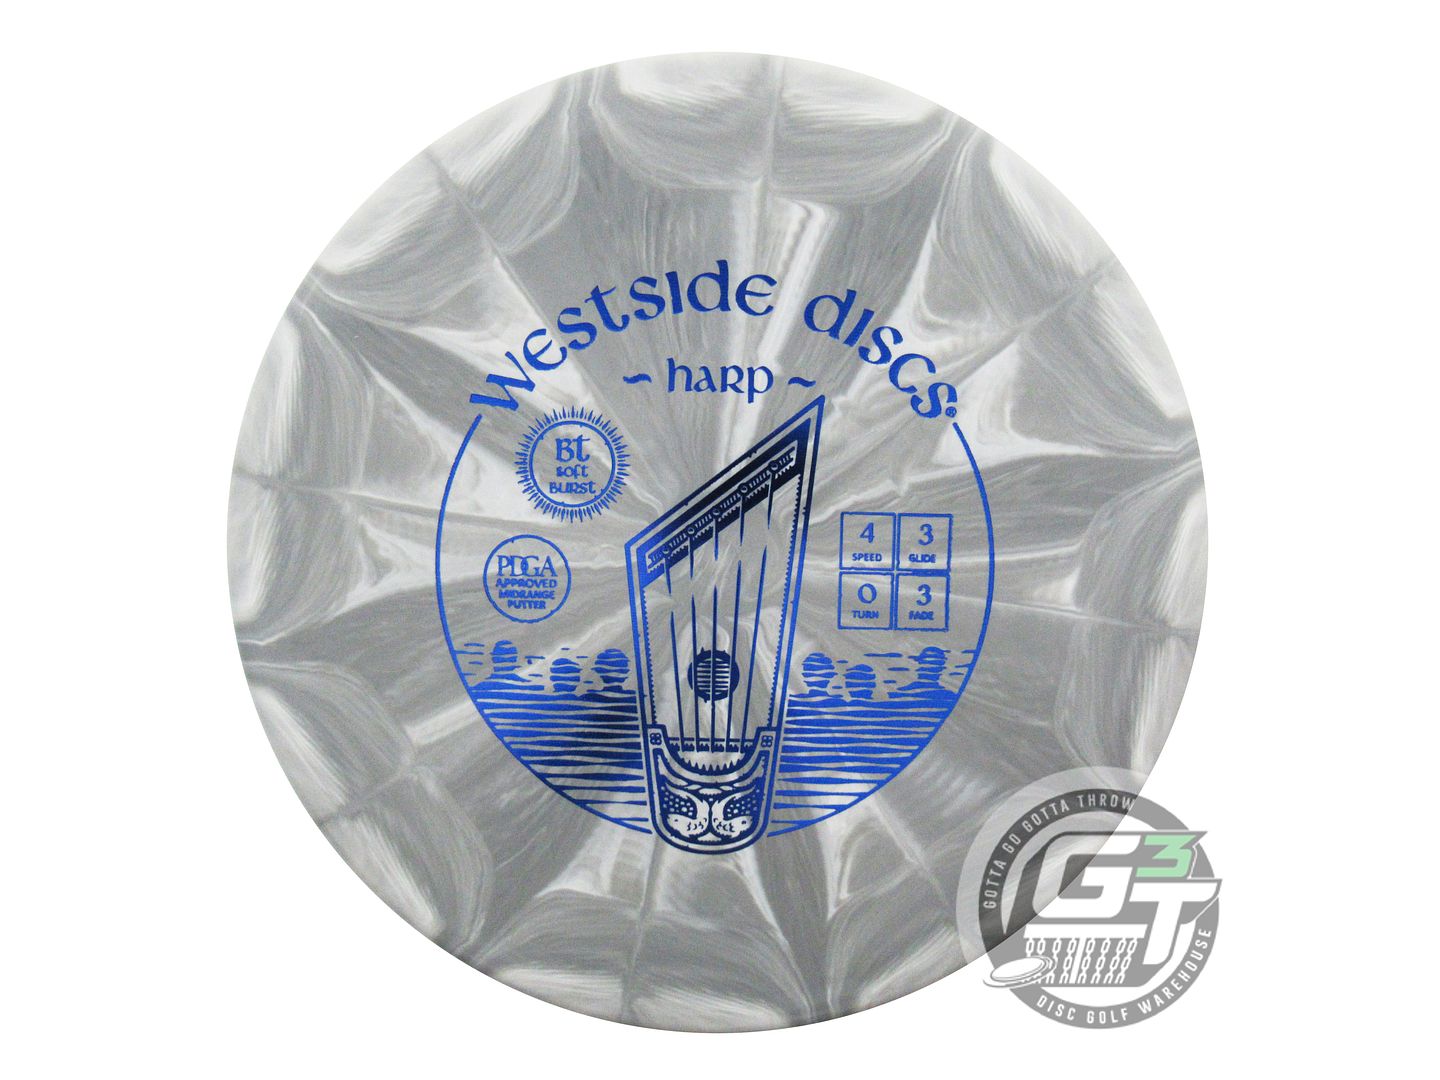 Westside BT Soft Burst Harp Putter Golf Disc (Individually Listed)